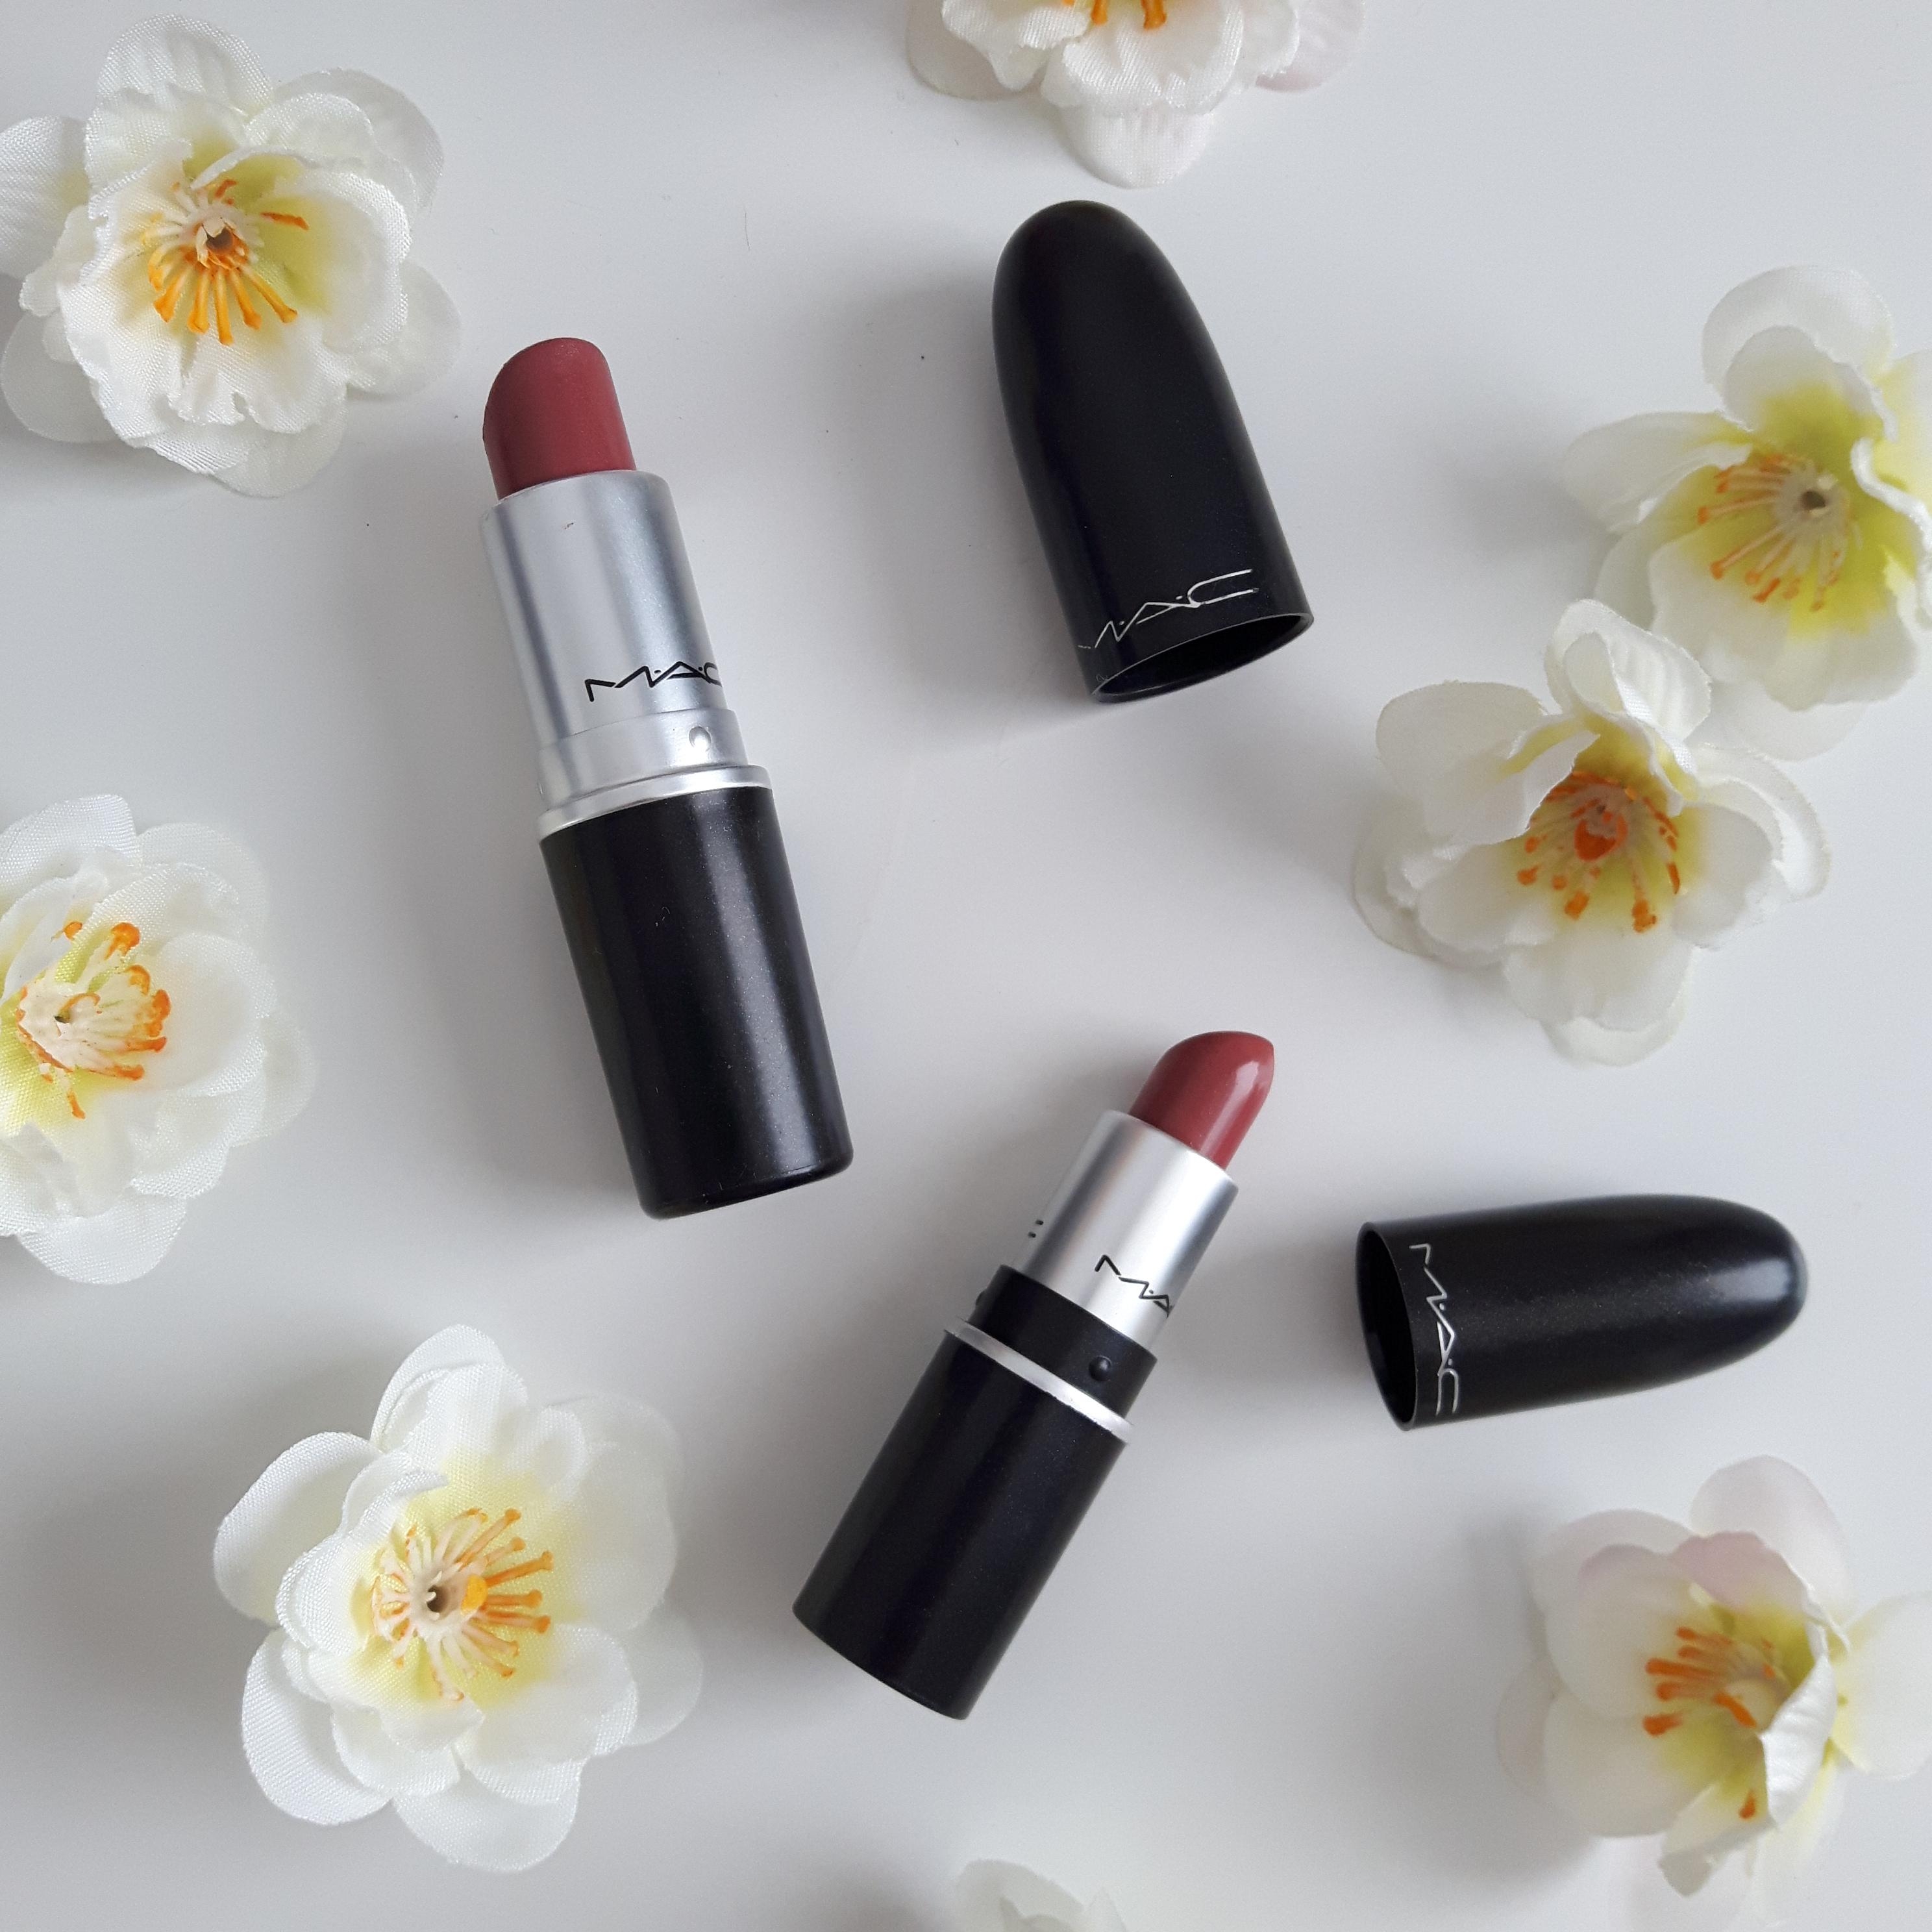 Ich liebe Mac Lippenstifte. ❤️
#beautychallenge #lippenstift